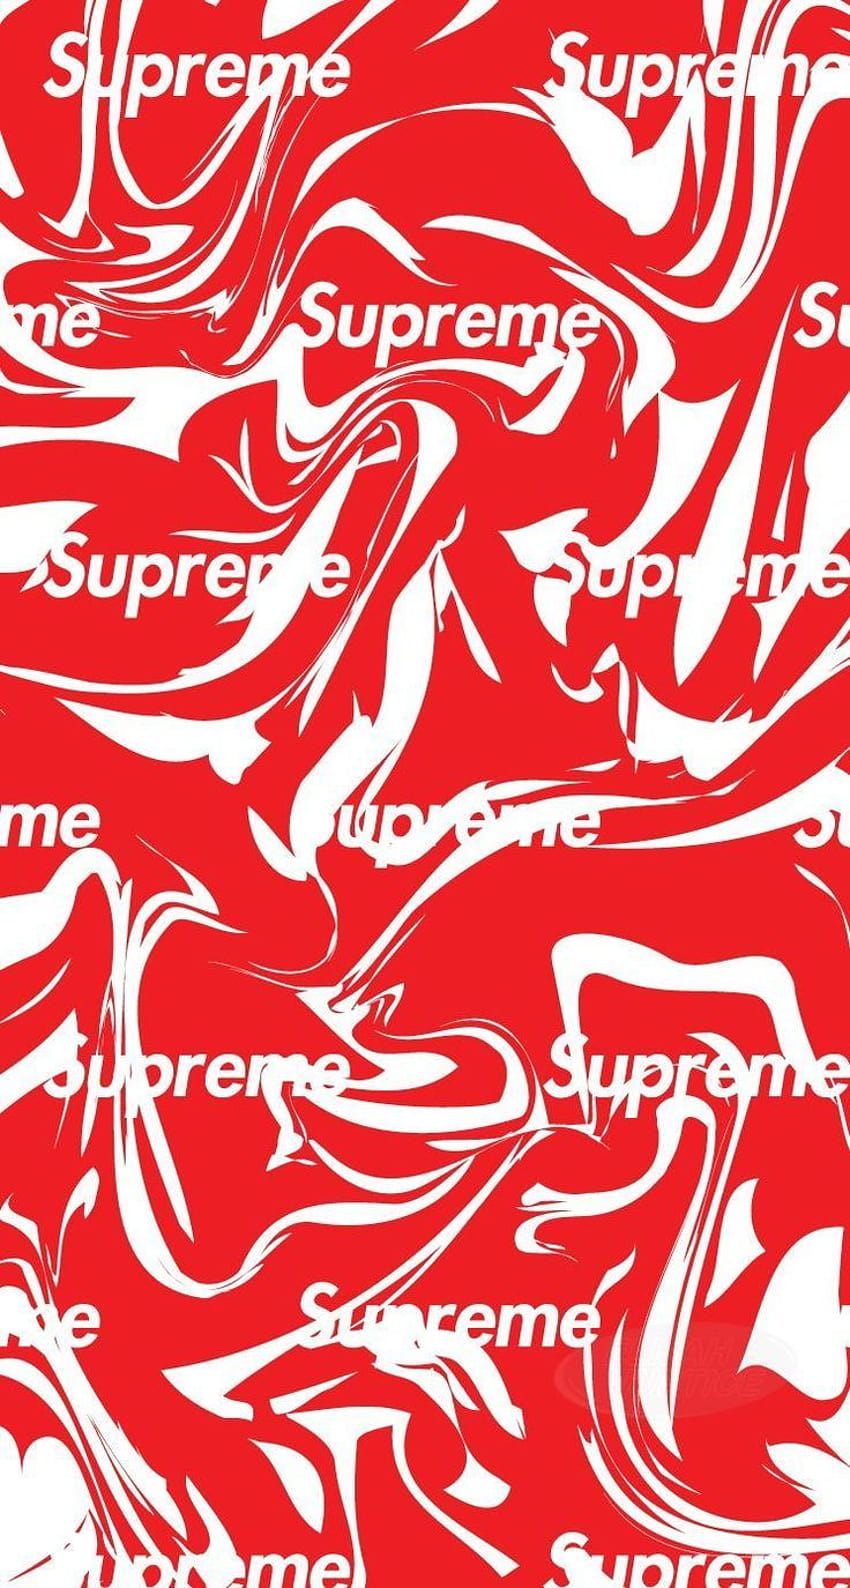 Supreme x Louis Vuitton  Supreme wallpaper, Supreme iphone